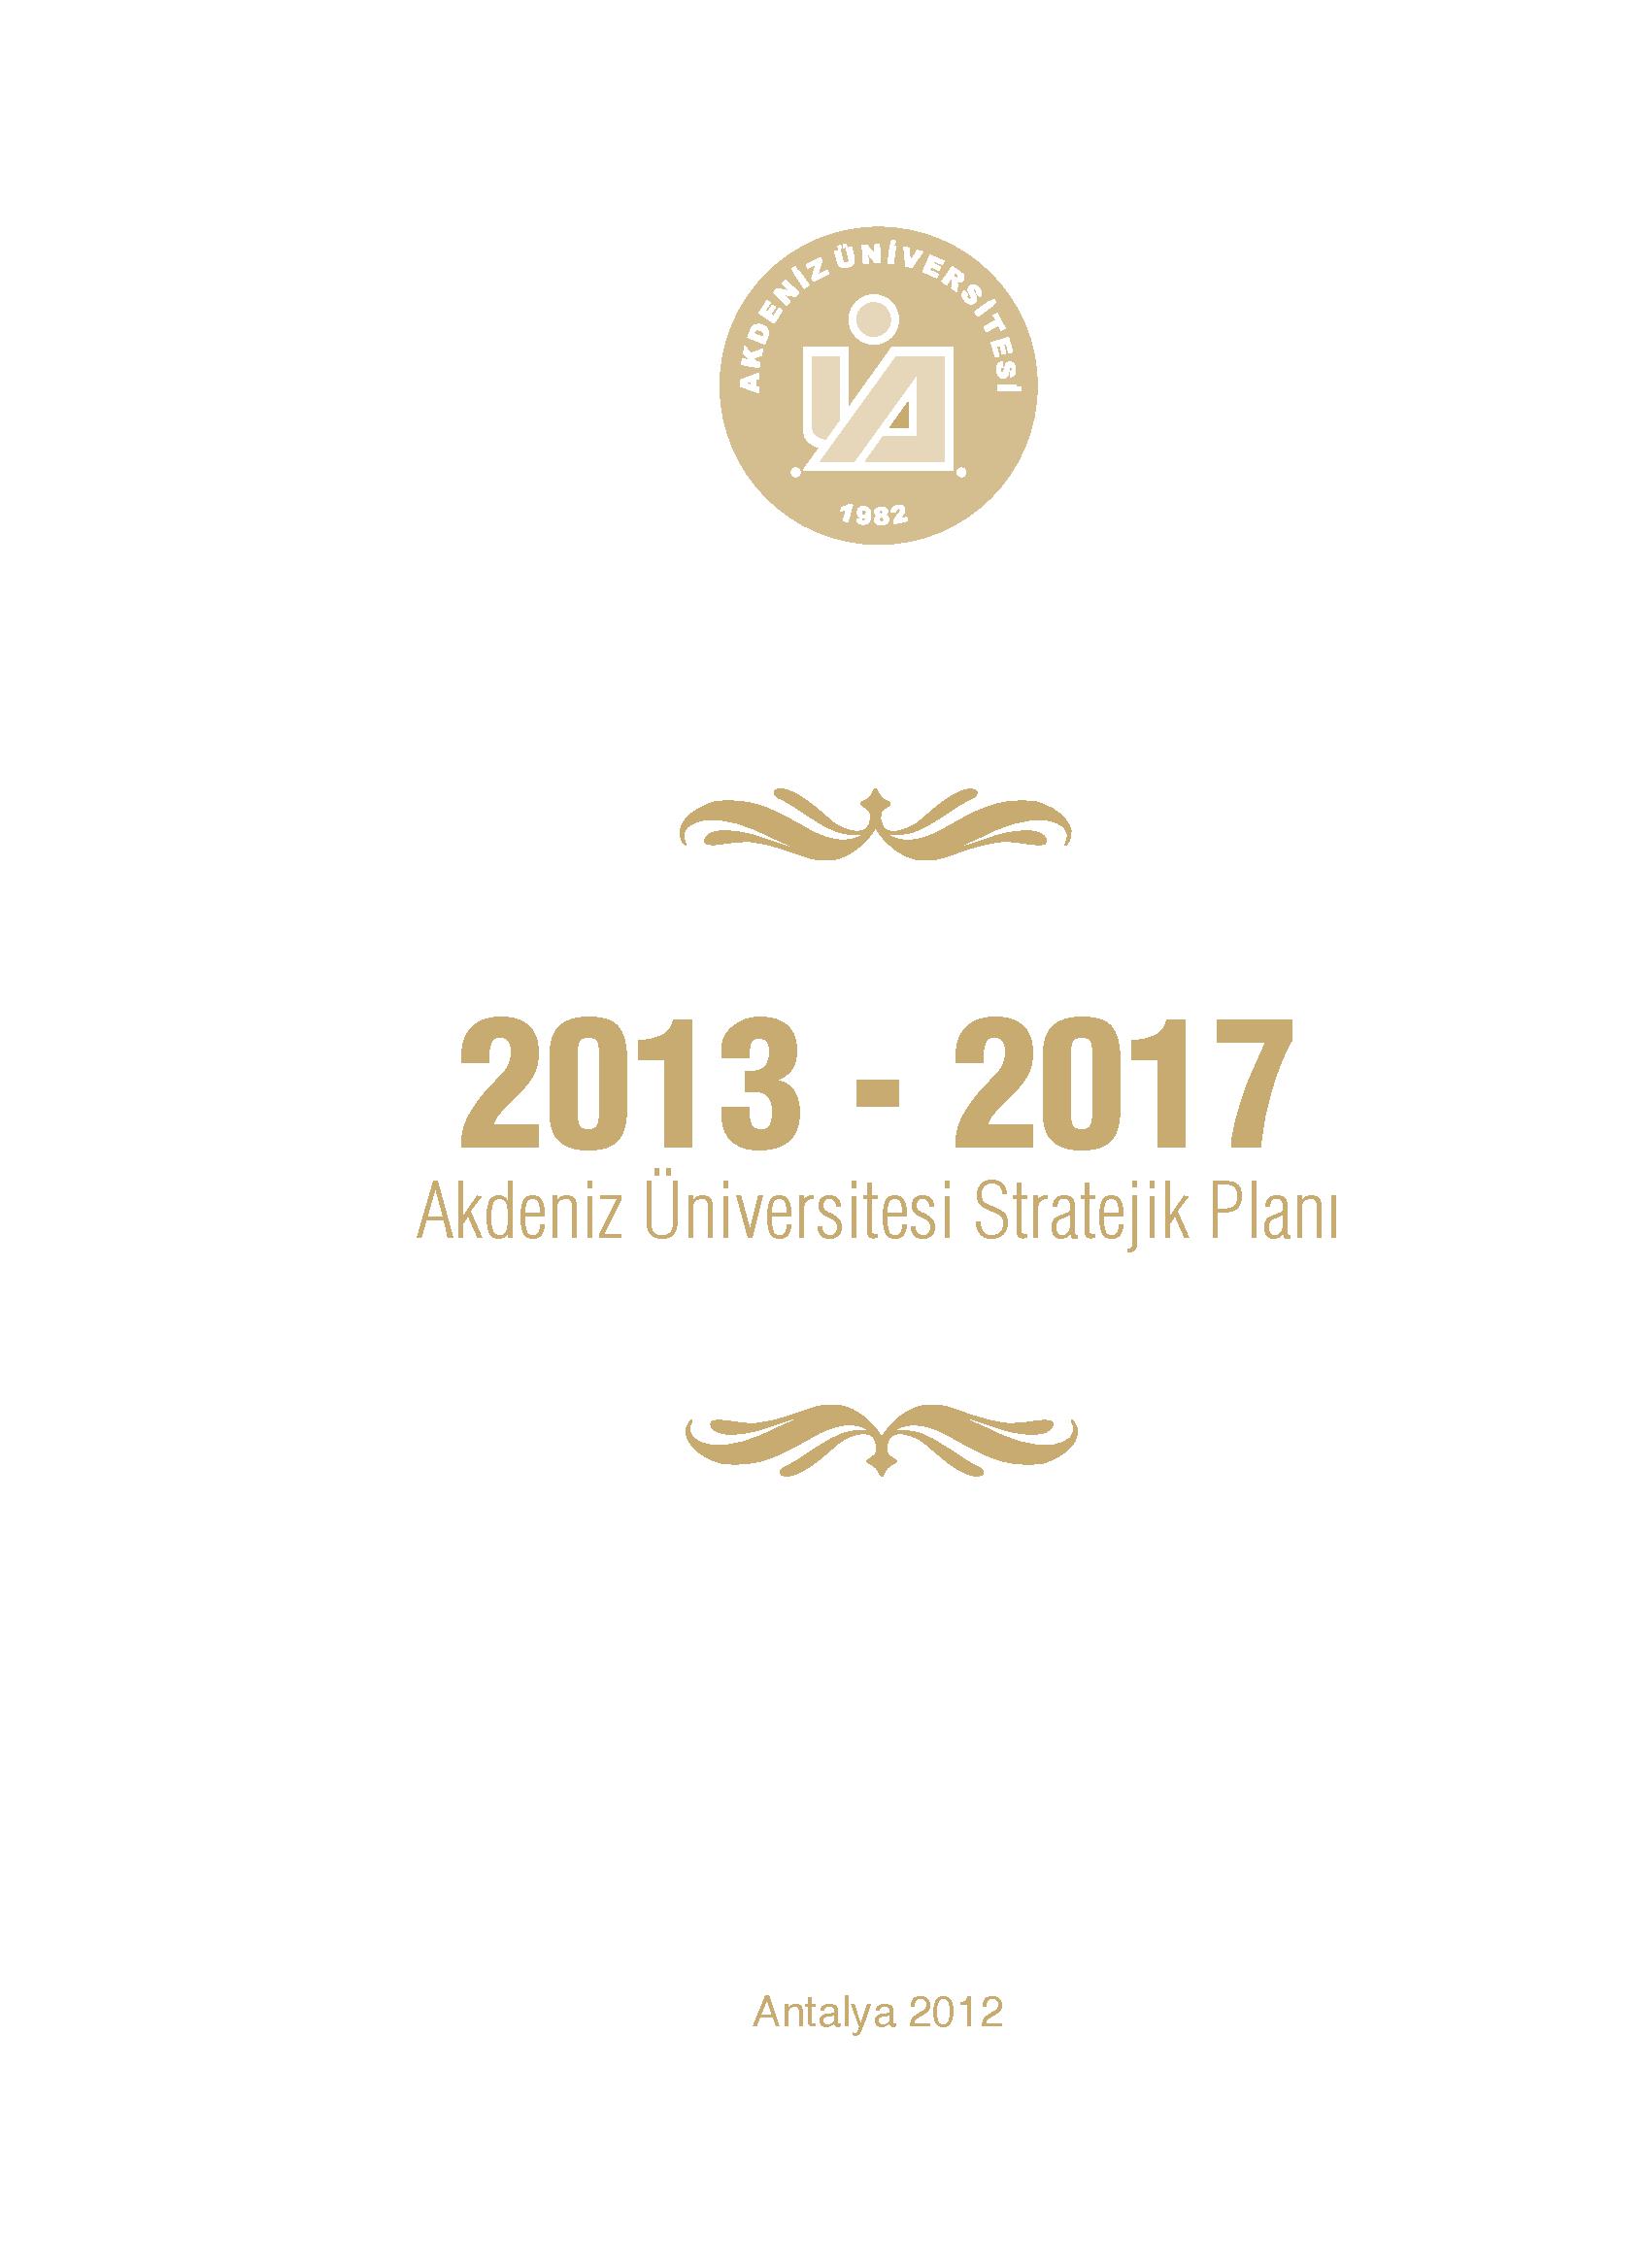 Akdeniz Üniversitesi 2013 - 2017 Stratejik Planı